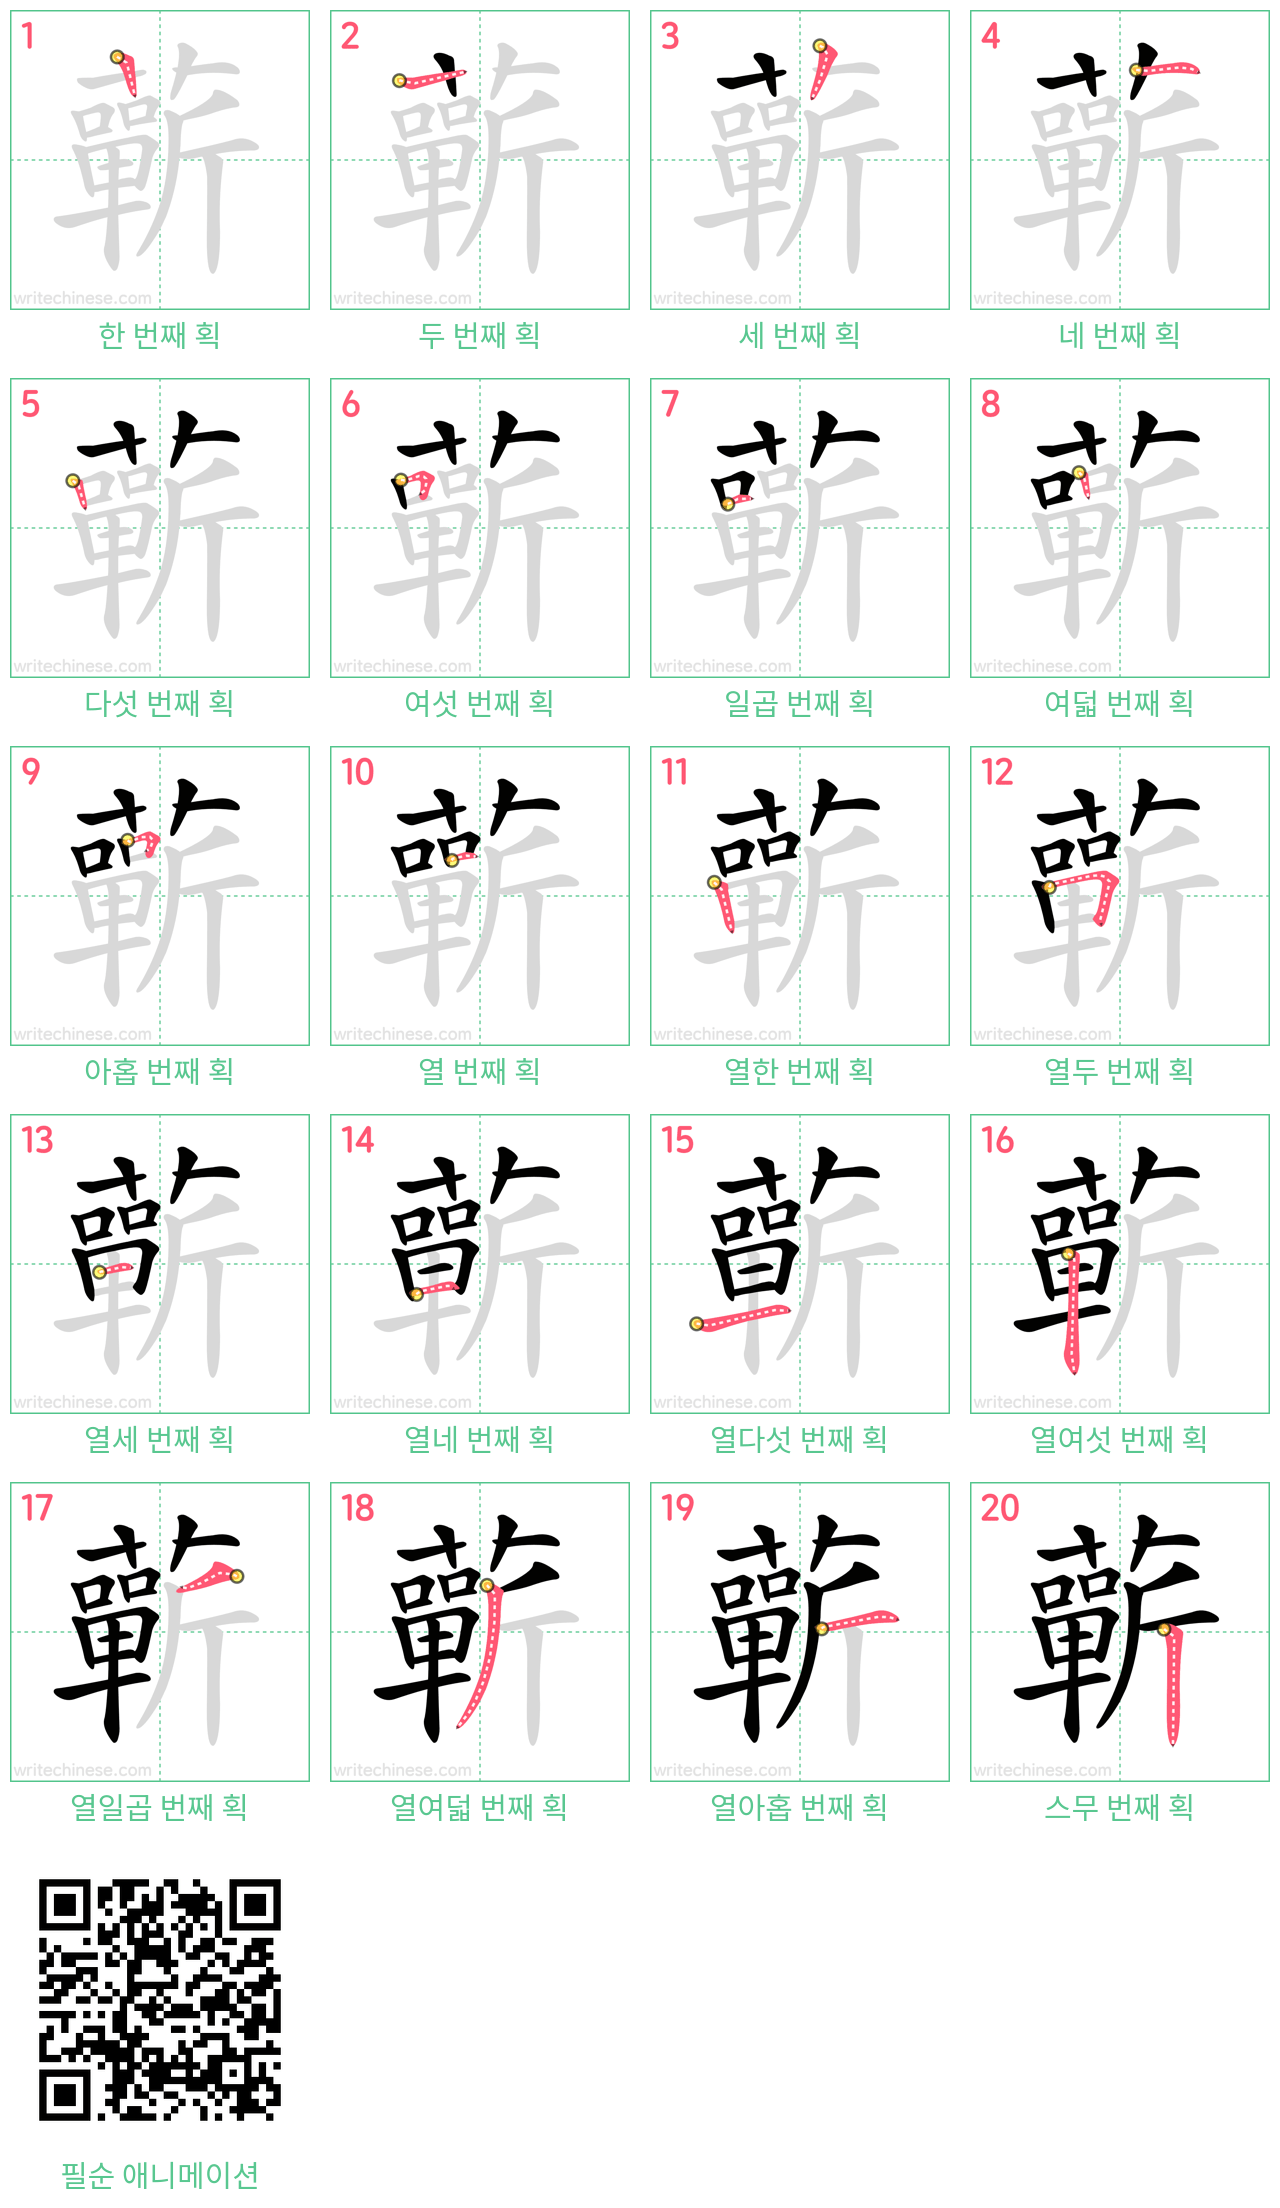 蘄 step-by-step stroke order diagrams